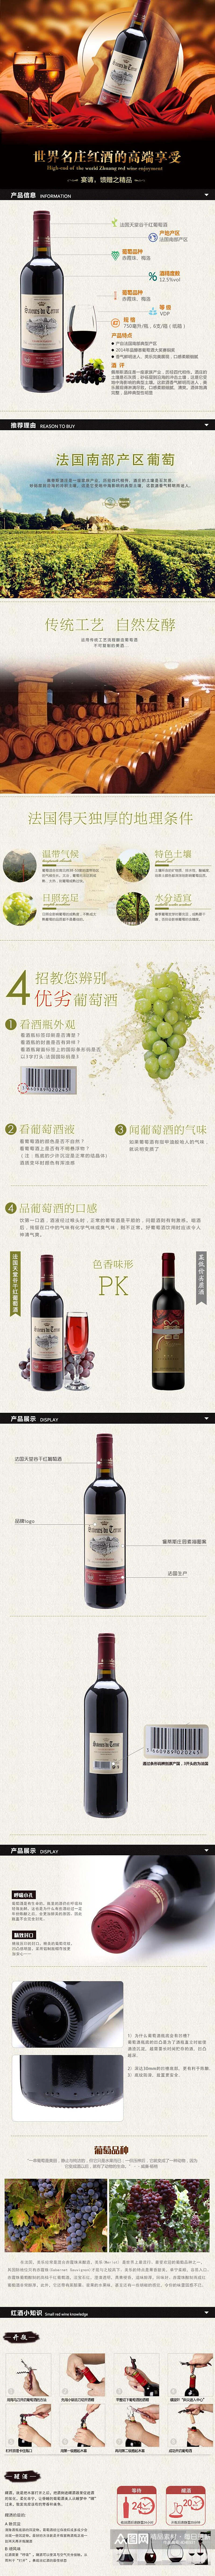 世界名庄红酒的高端享受酒电商详情页素材